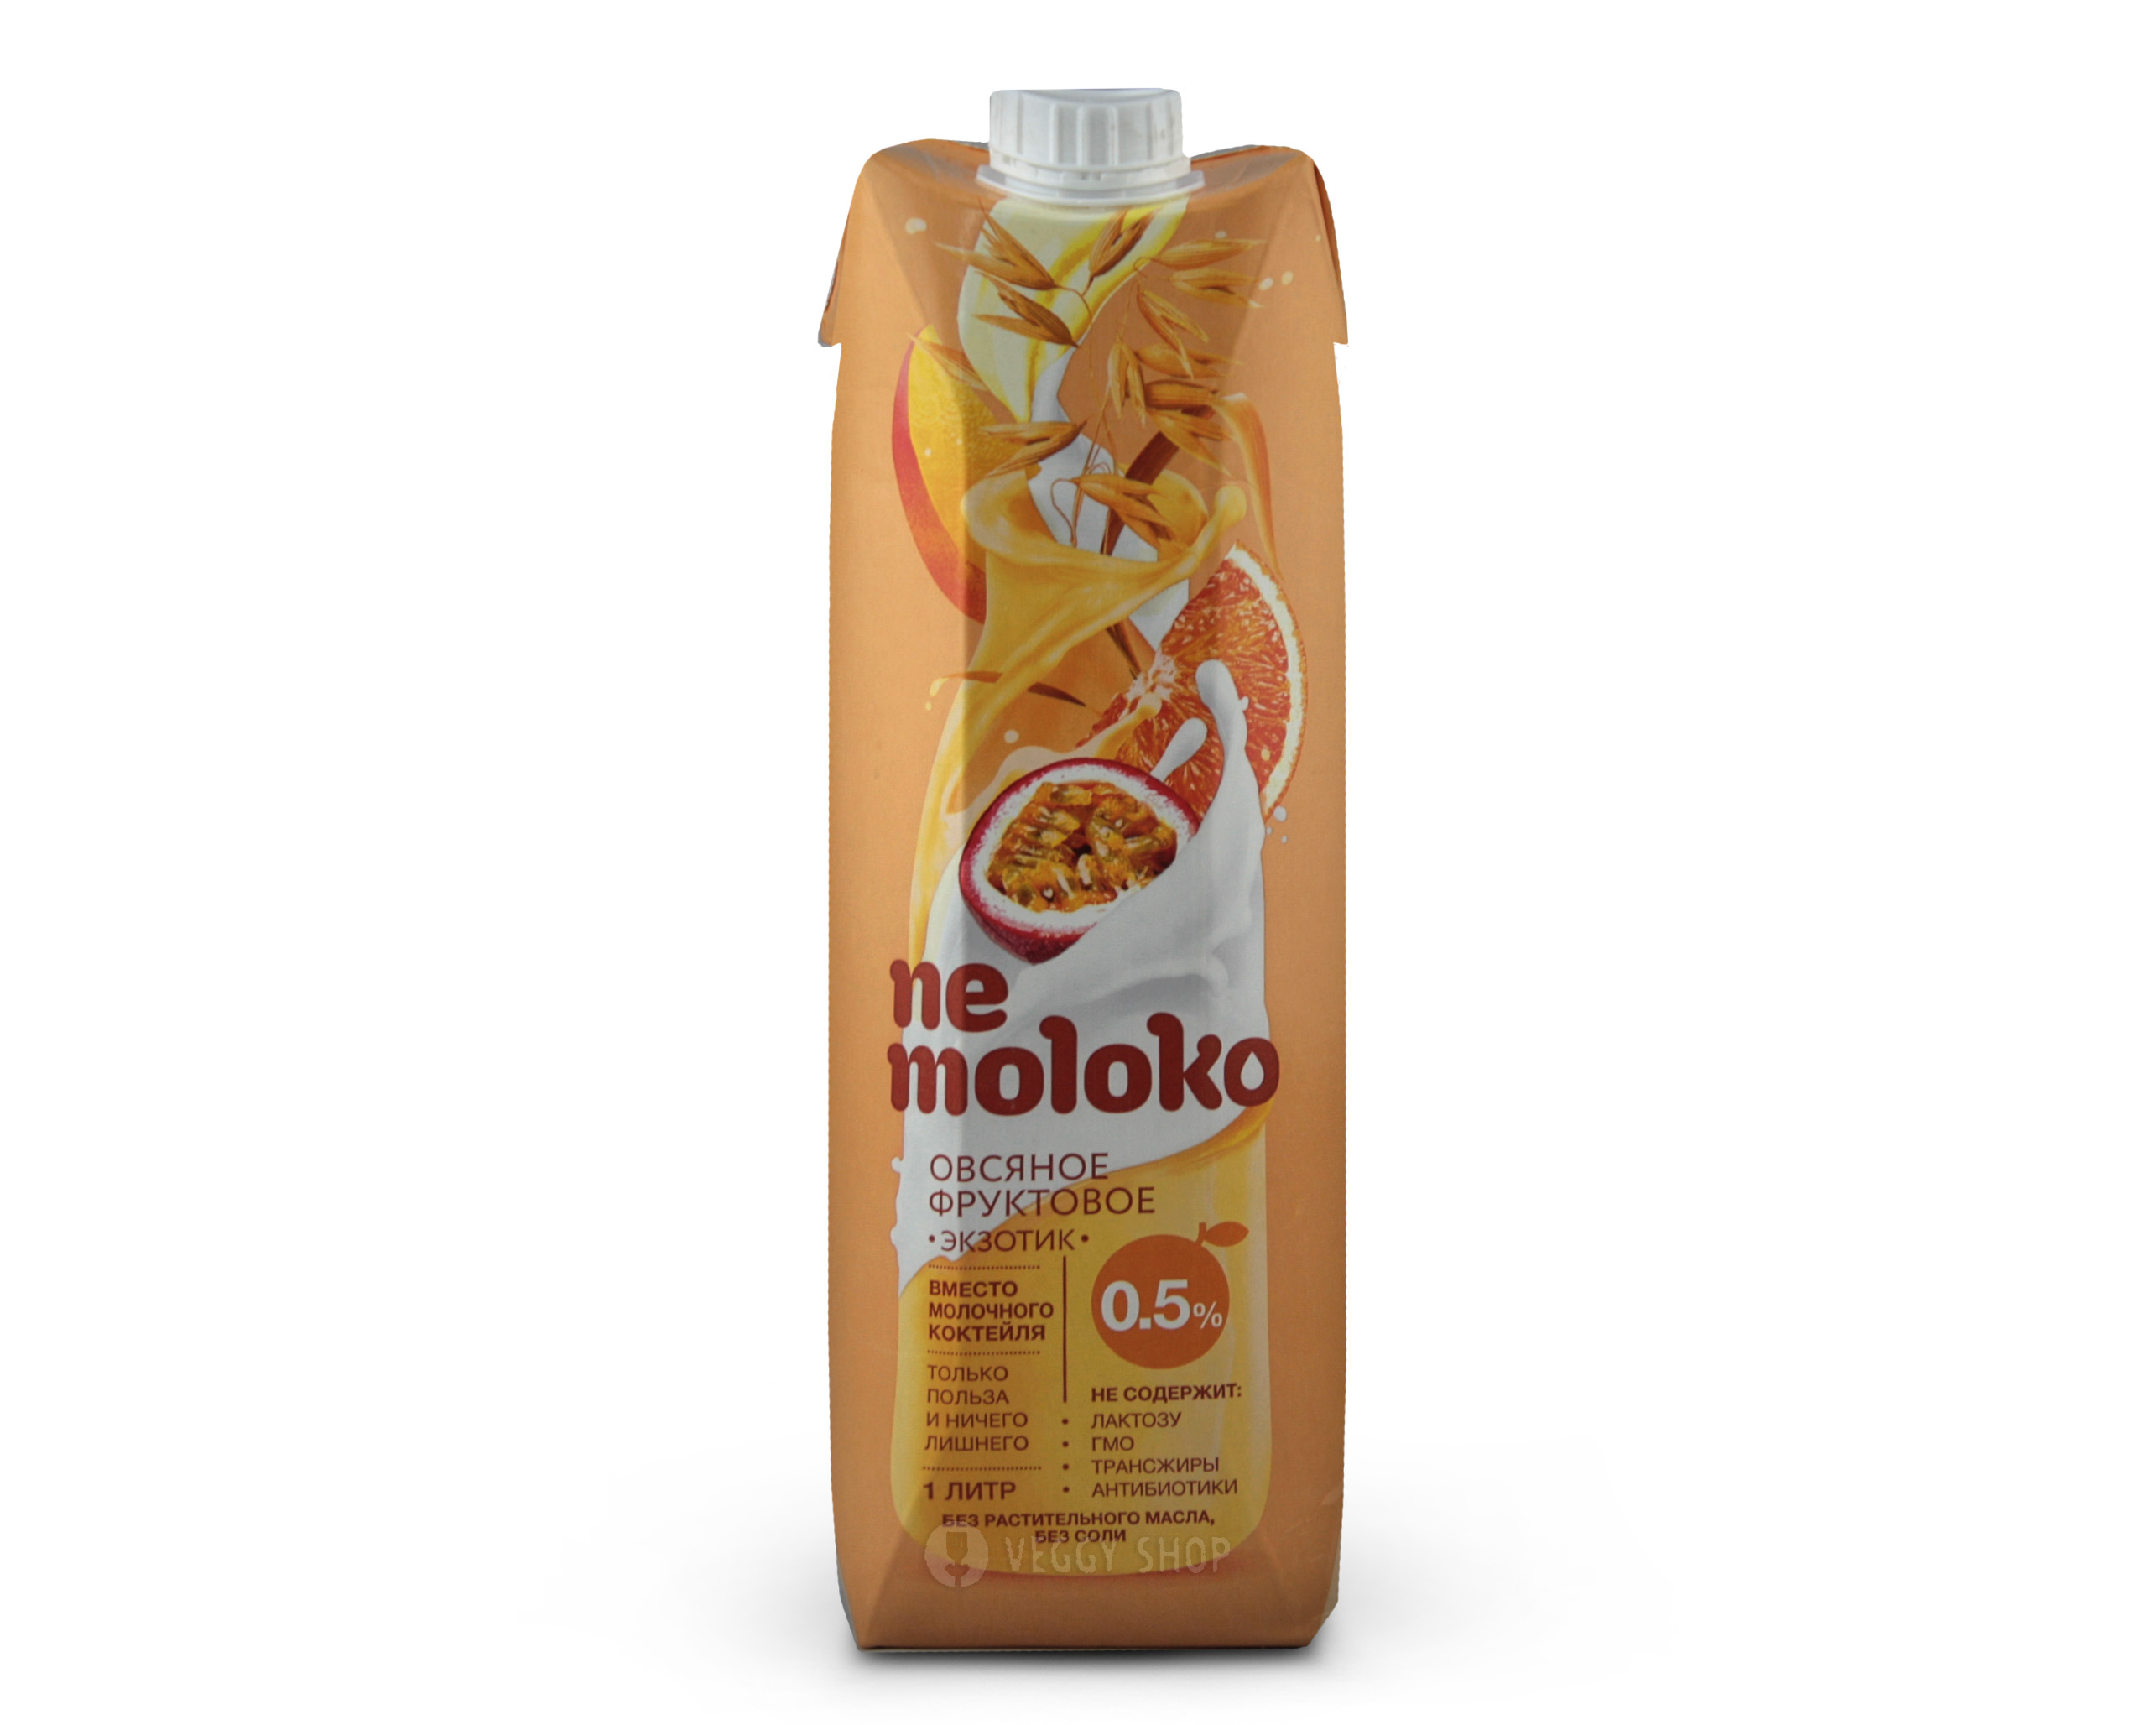 Напиток овсяный фруктовый экзотик "Nemoloko" 1 л